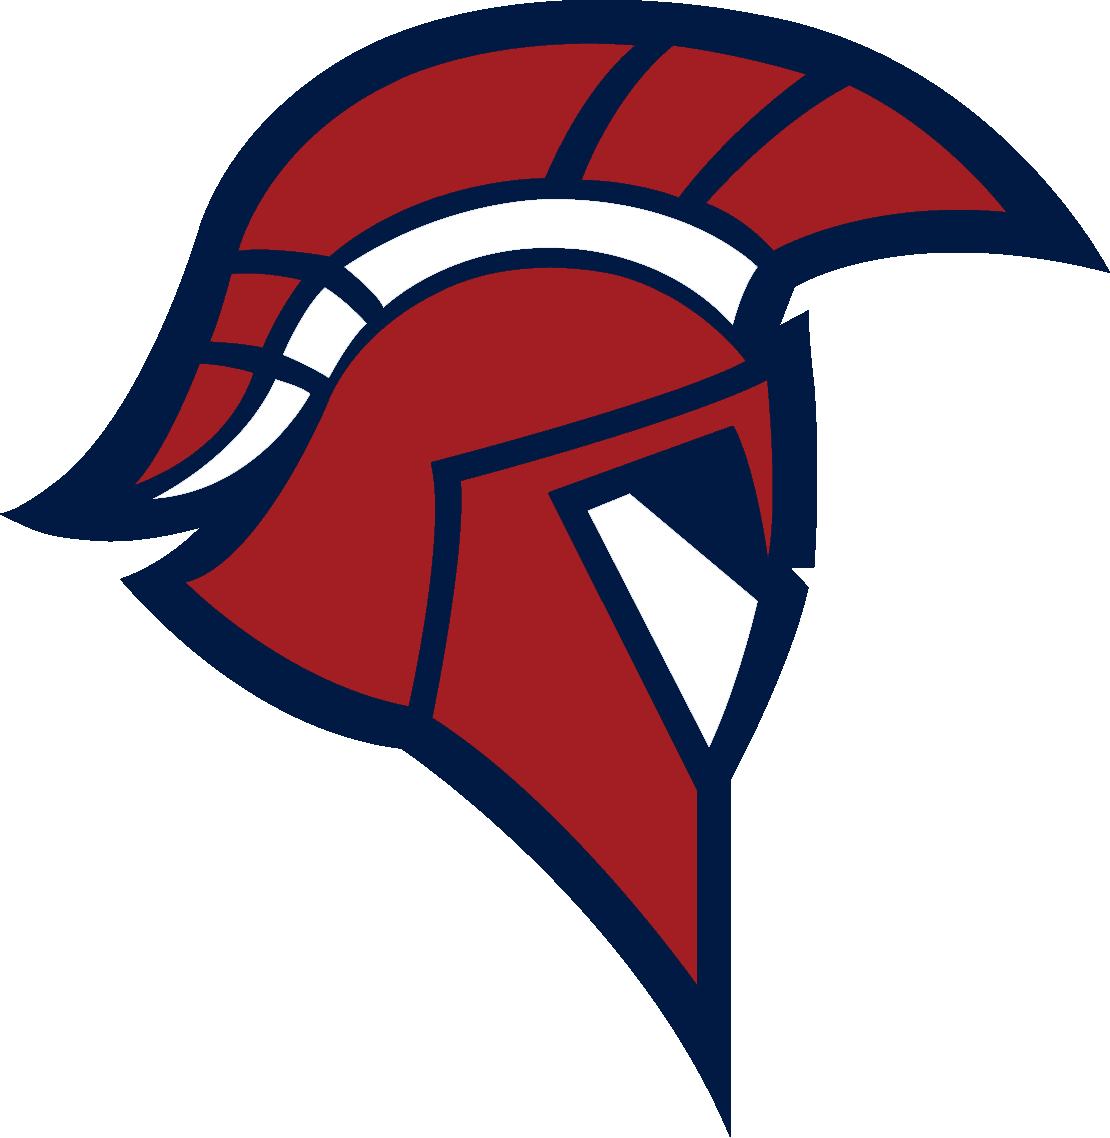 Platteview High School Football Logo